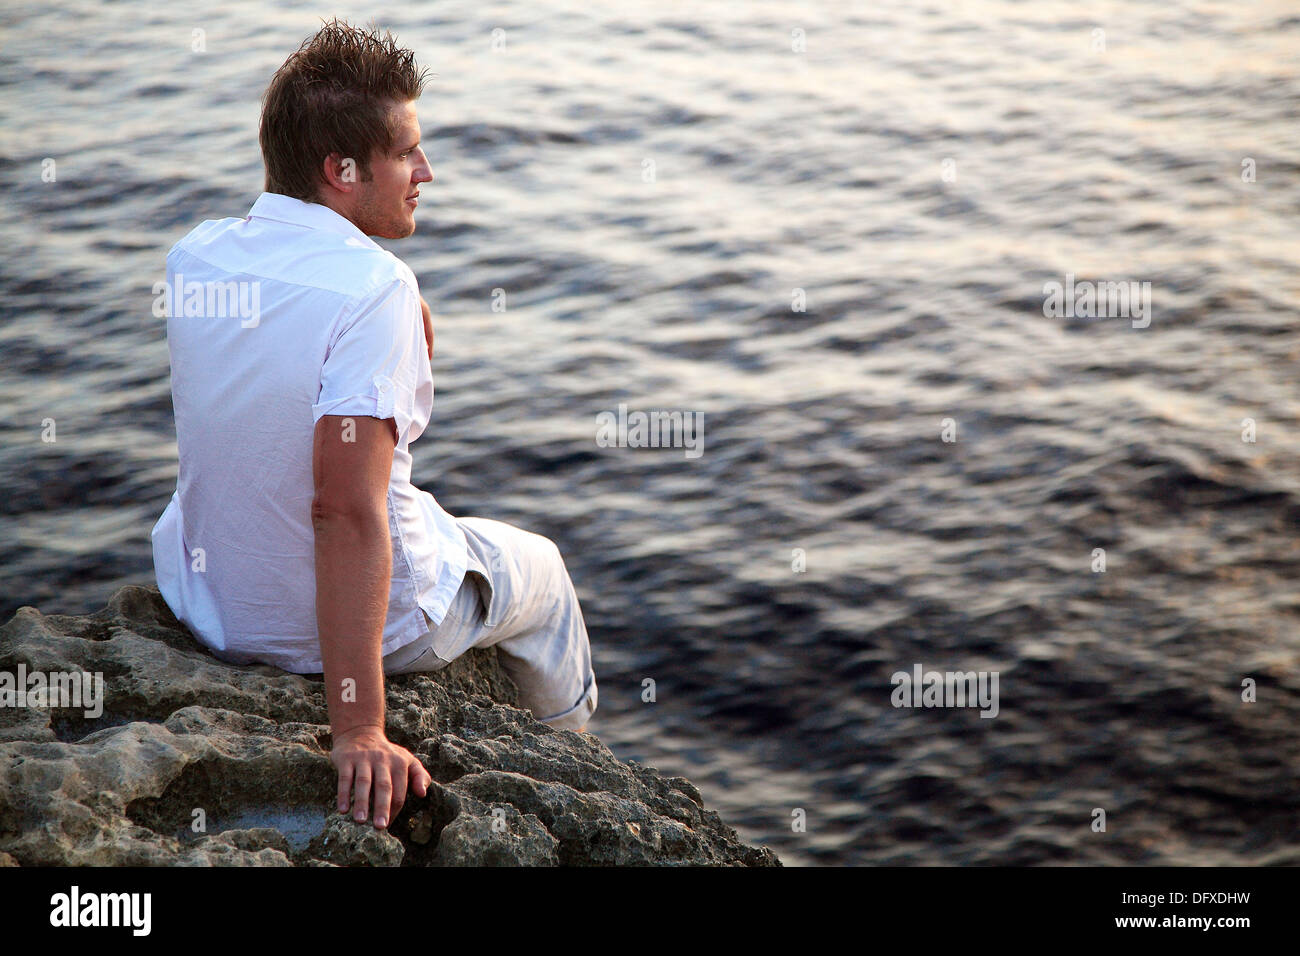 Curtidos hombres caucásicos con el pelo castaño oscuro, de 25 años, vestido con camisa blanca mira a través de una puesta de sol sobre el mar en Dwerja, en la isla de Foto de stock